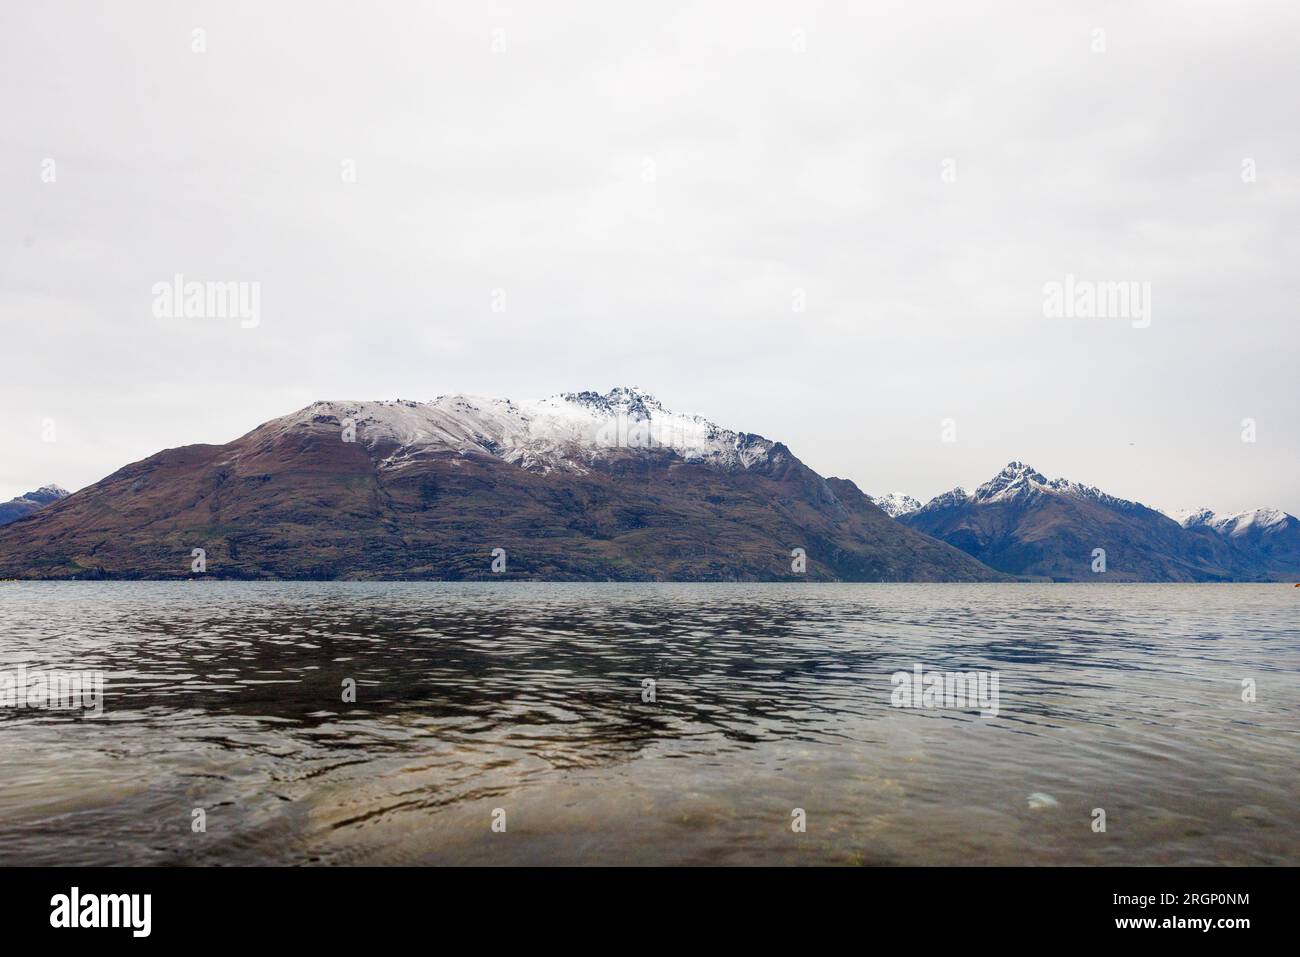 Una serie di picchi trovati a Queenstown in nuova Zelanda. L'immagine mostra un lago in primo piano e le montagne con neve sulle cime più alte sullo sfondo Foto Stock